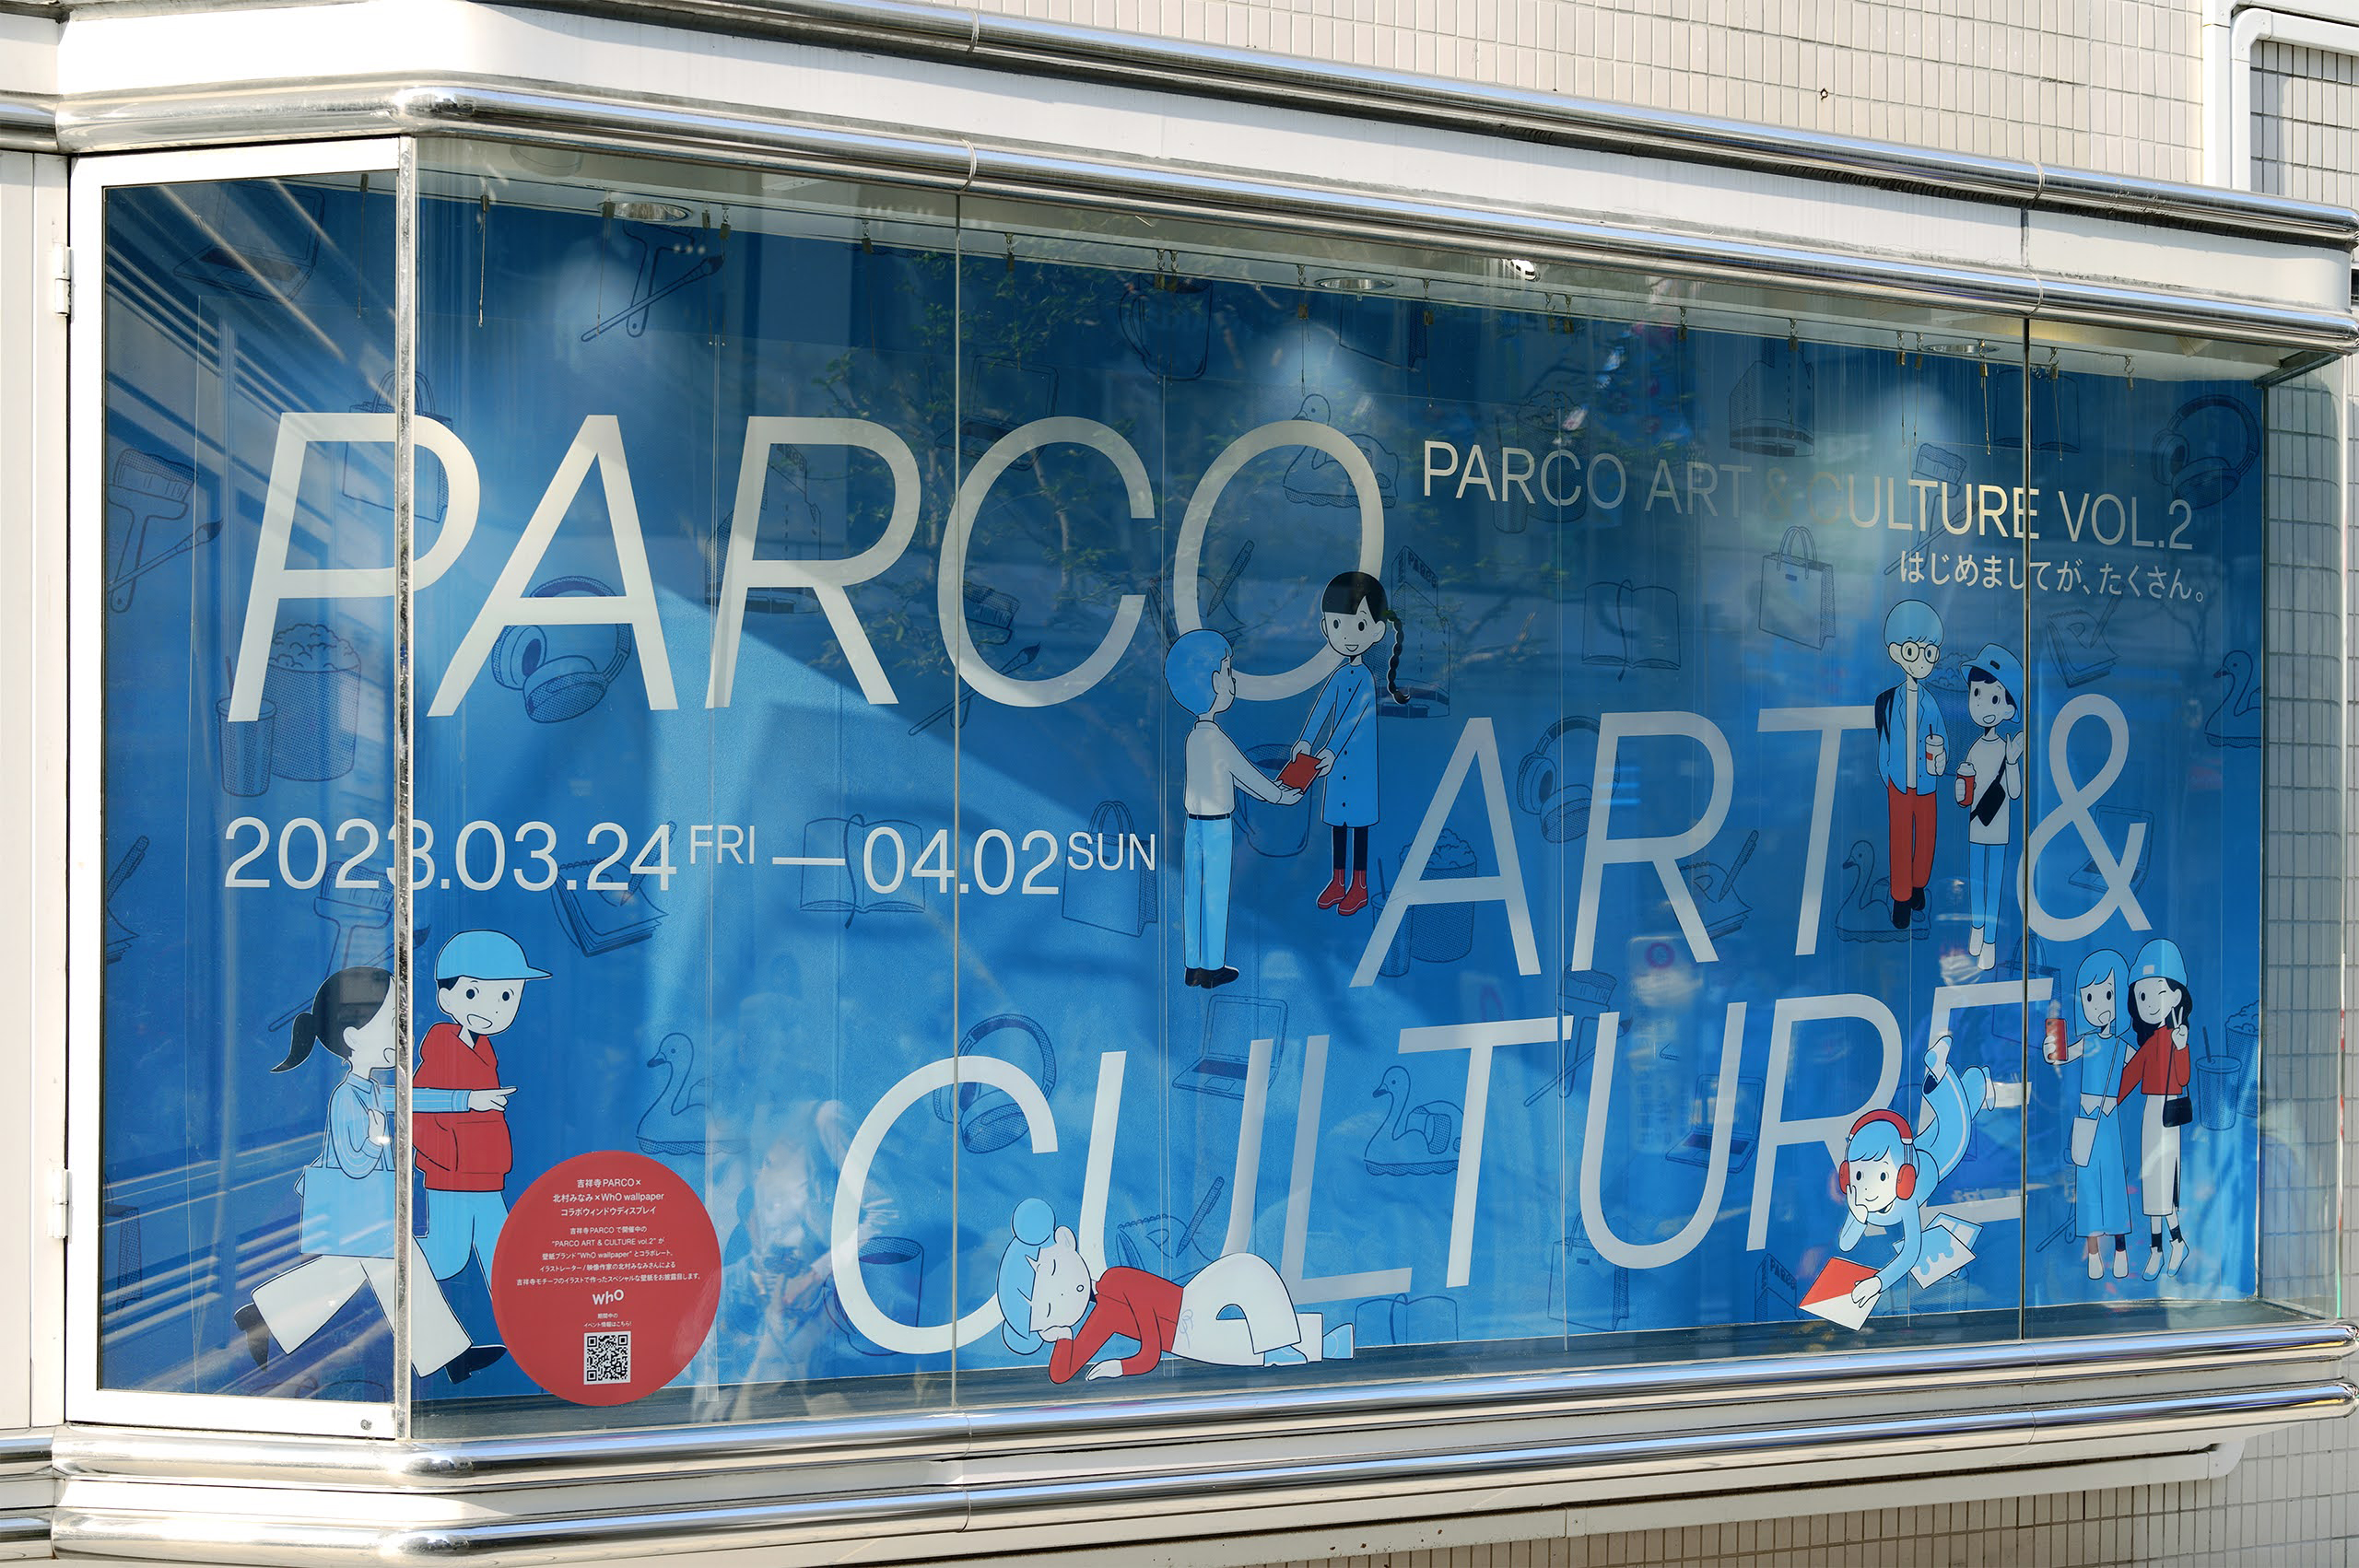 吉祥寺PARCOにて開催された「PARCO ART&CULTURE VOL.2」のショーウィンドウ壁面装飾に展開したオリジナルデザイン